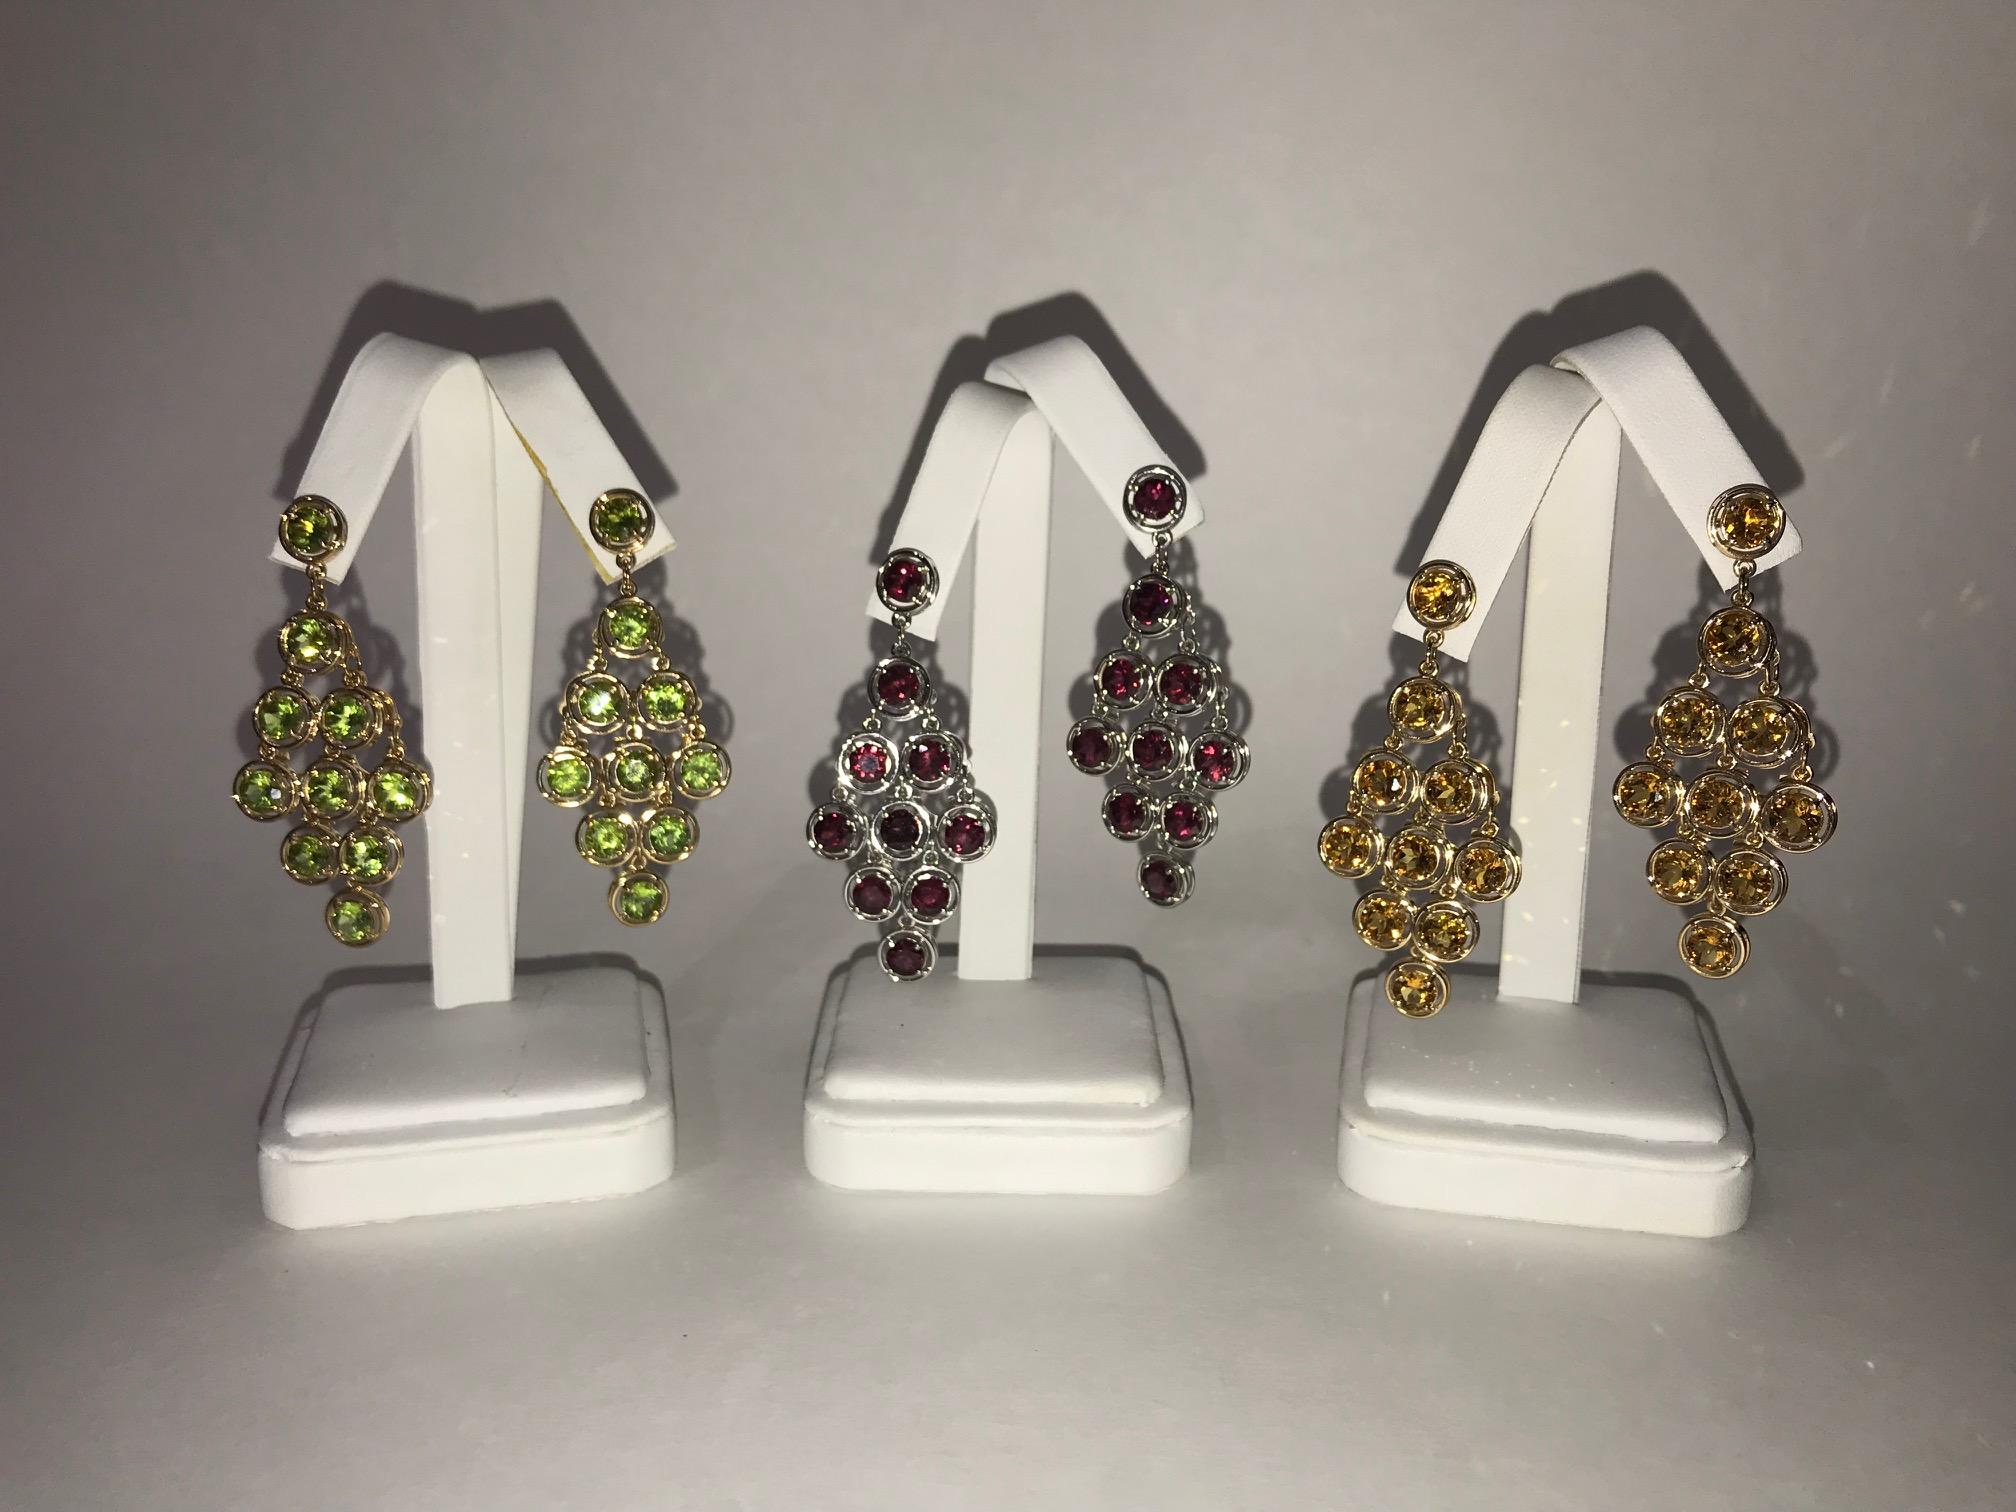 statement chandelier earrings